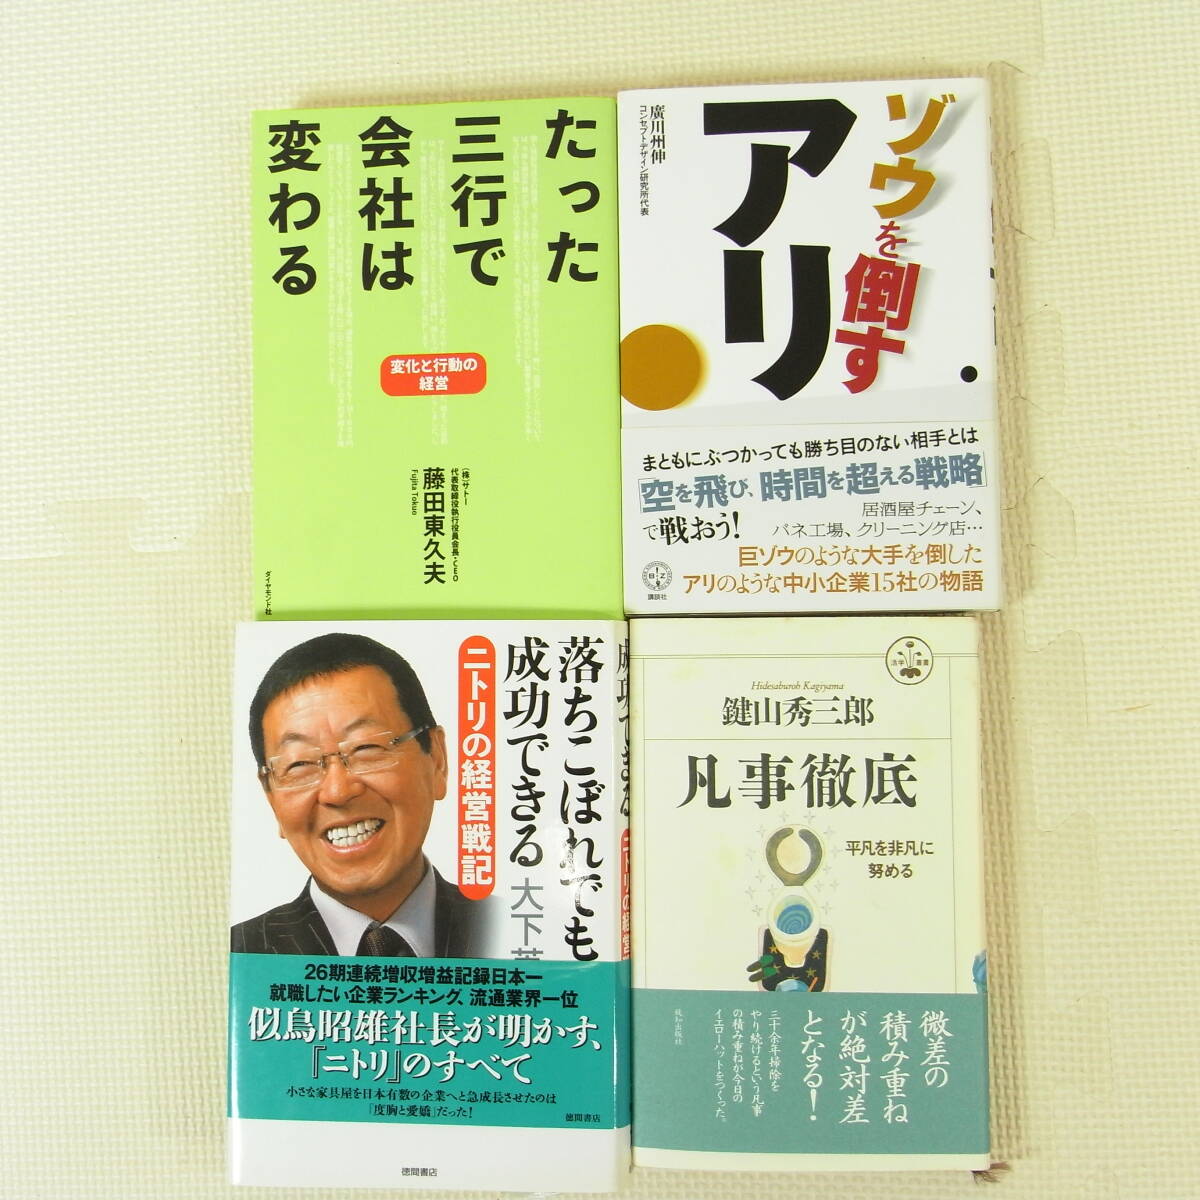  enterprise manager relation book@34 pcs. set Honda . one ... Kazuo .. regular Matsushita ...litsu* Karl ton DELLva- Gin IKEA Donald * playing cards 